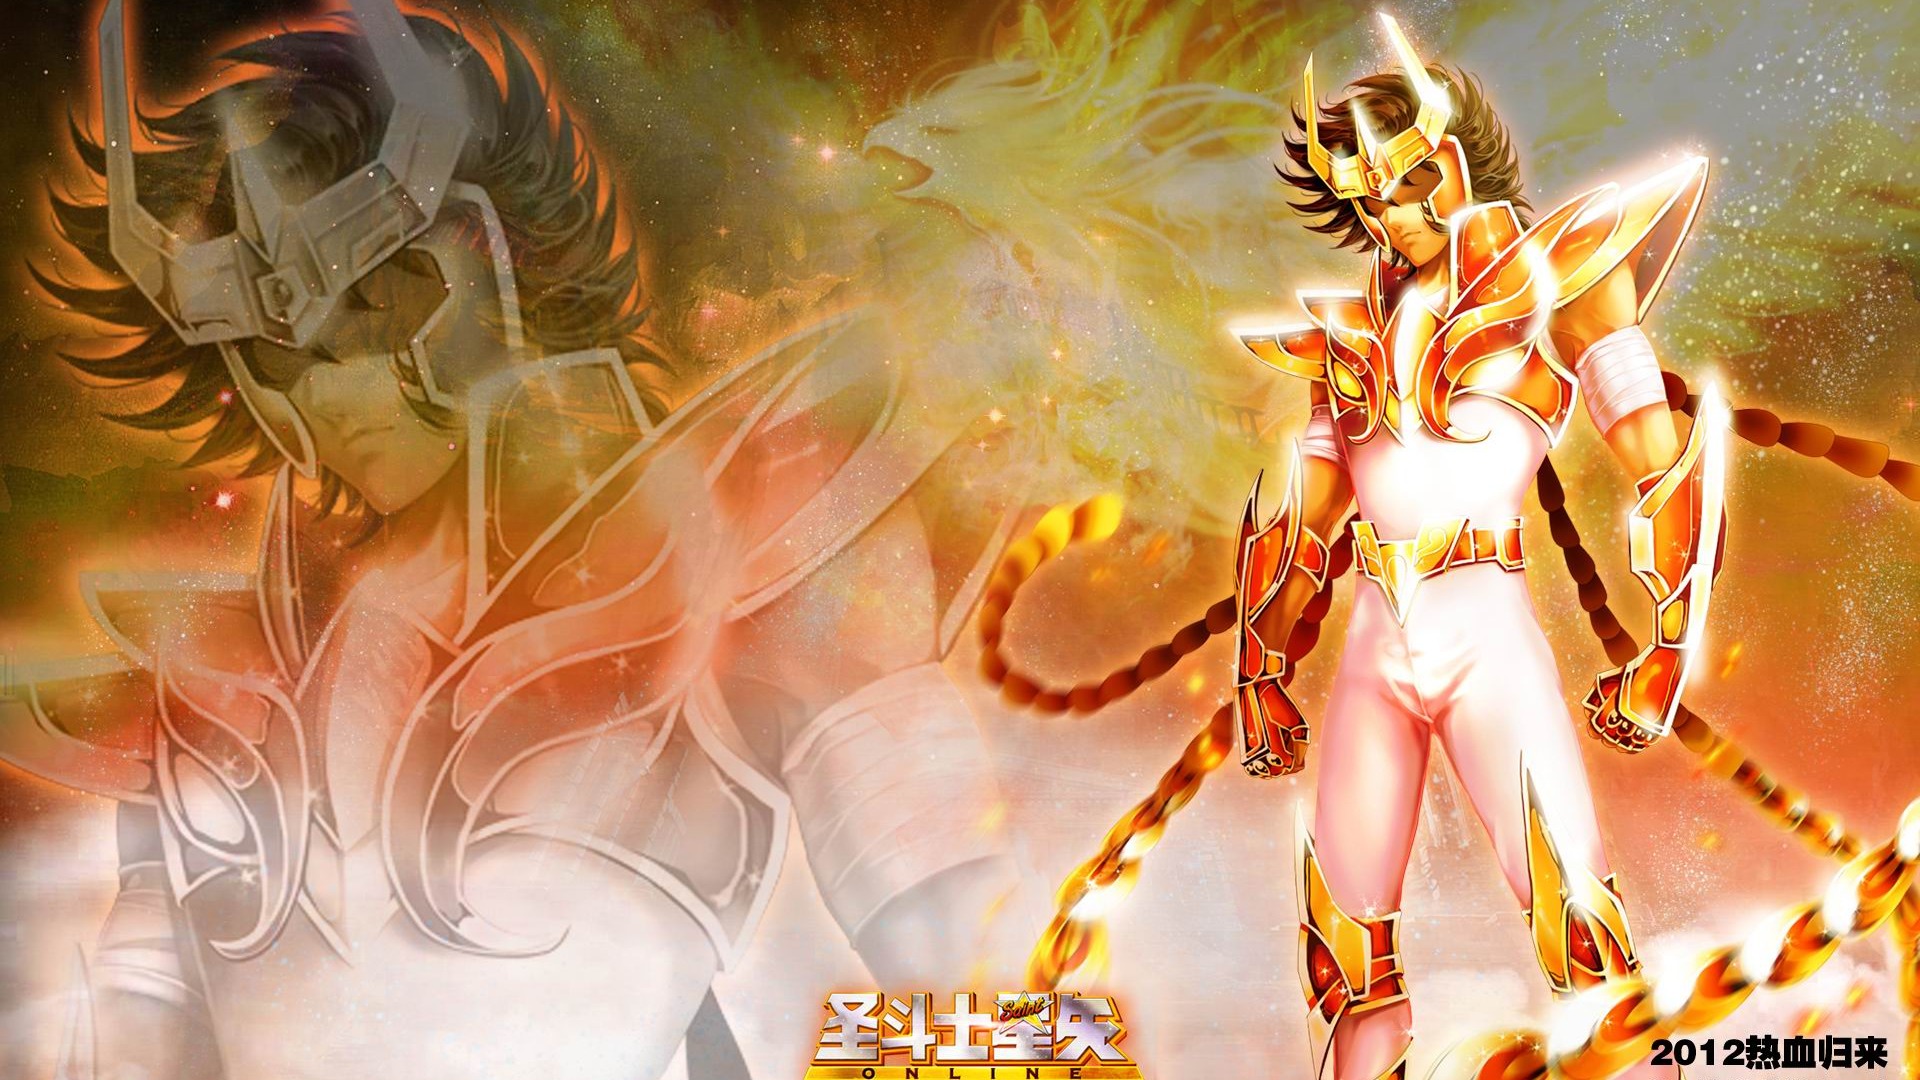 Saint Seiya Omega Anime HD Wallpaper Full Desktop